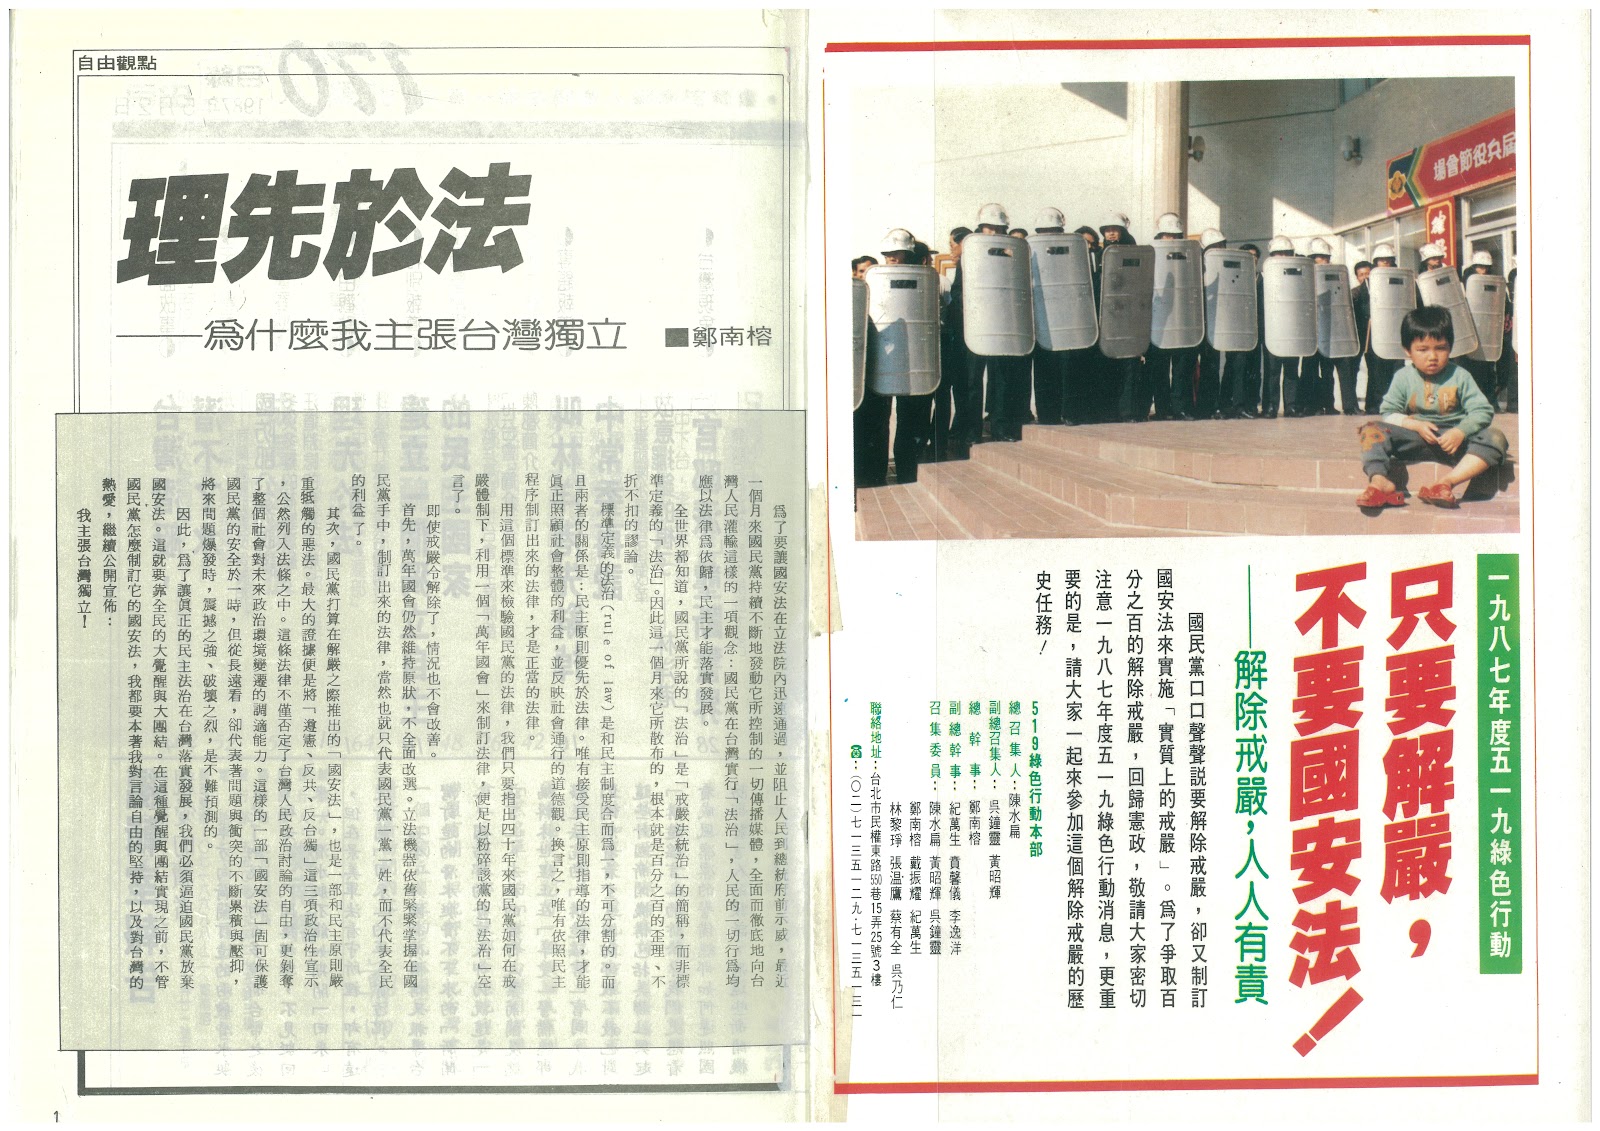 鄭南榕，〈理先於法〉，《自由時代》週刊，第170期，1987.5.2，頁1